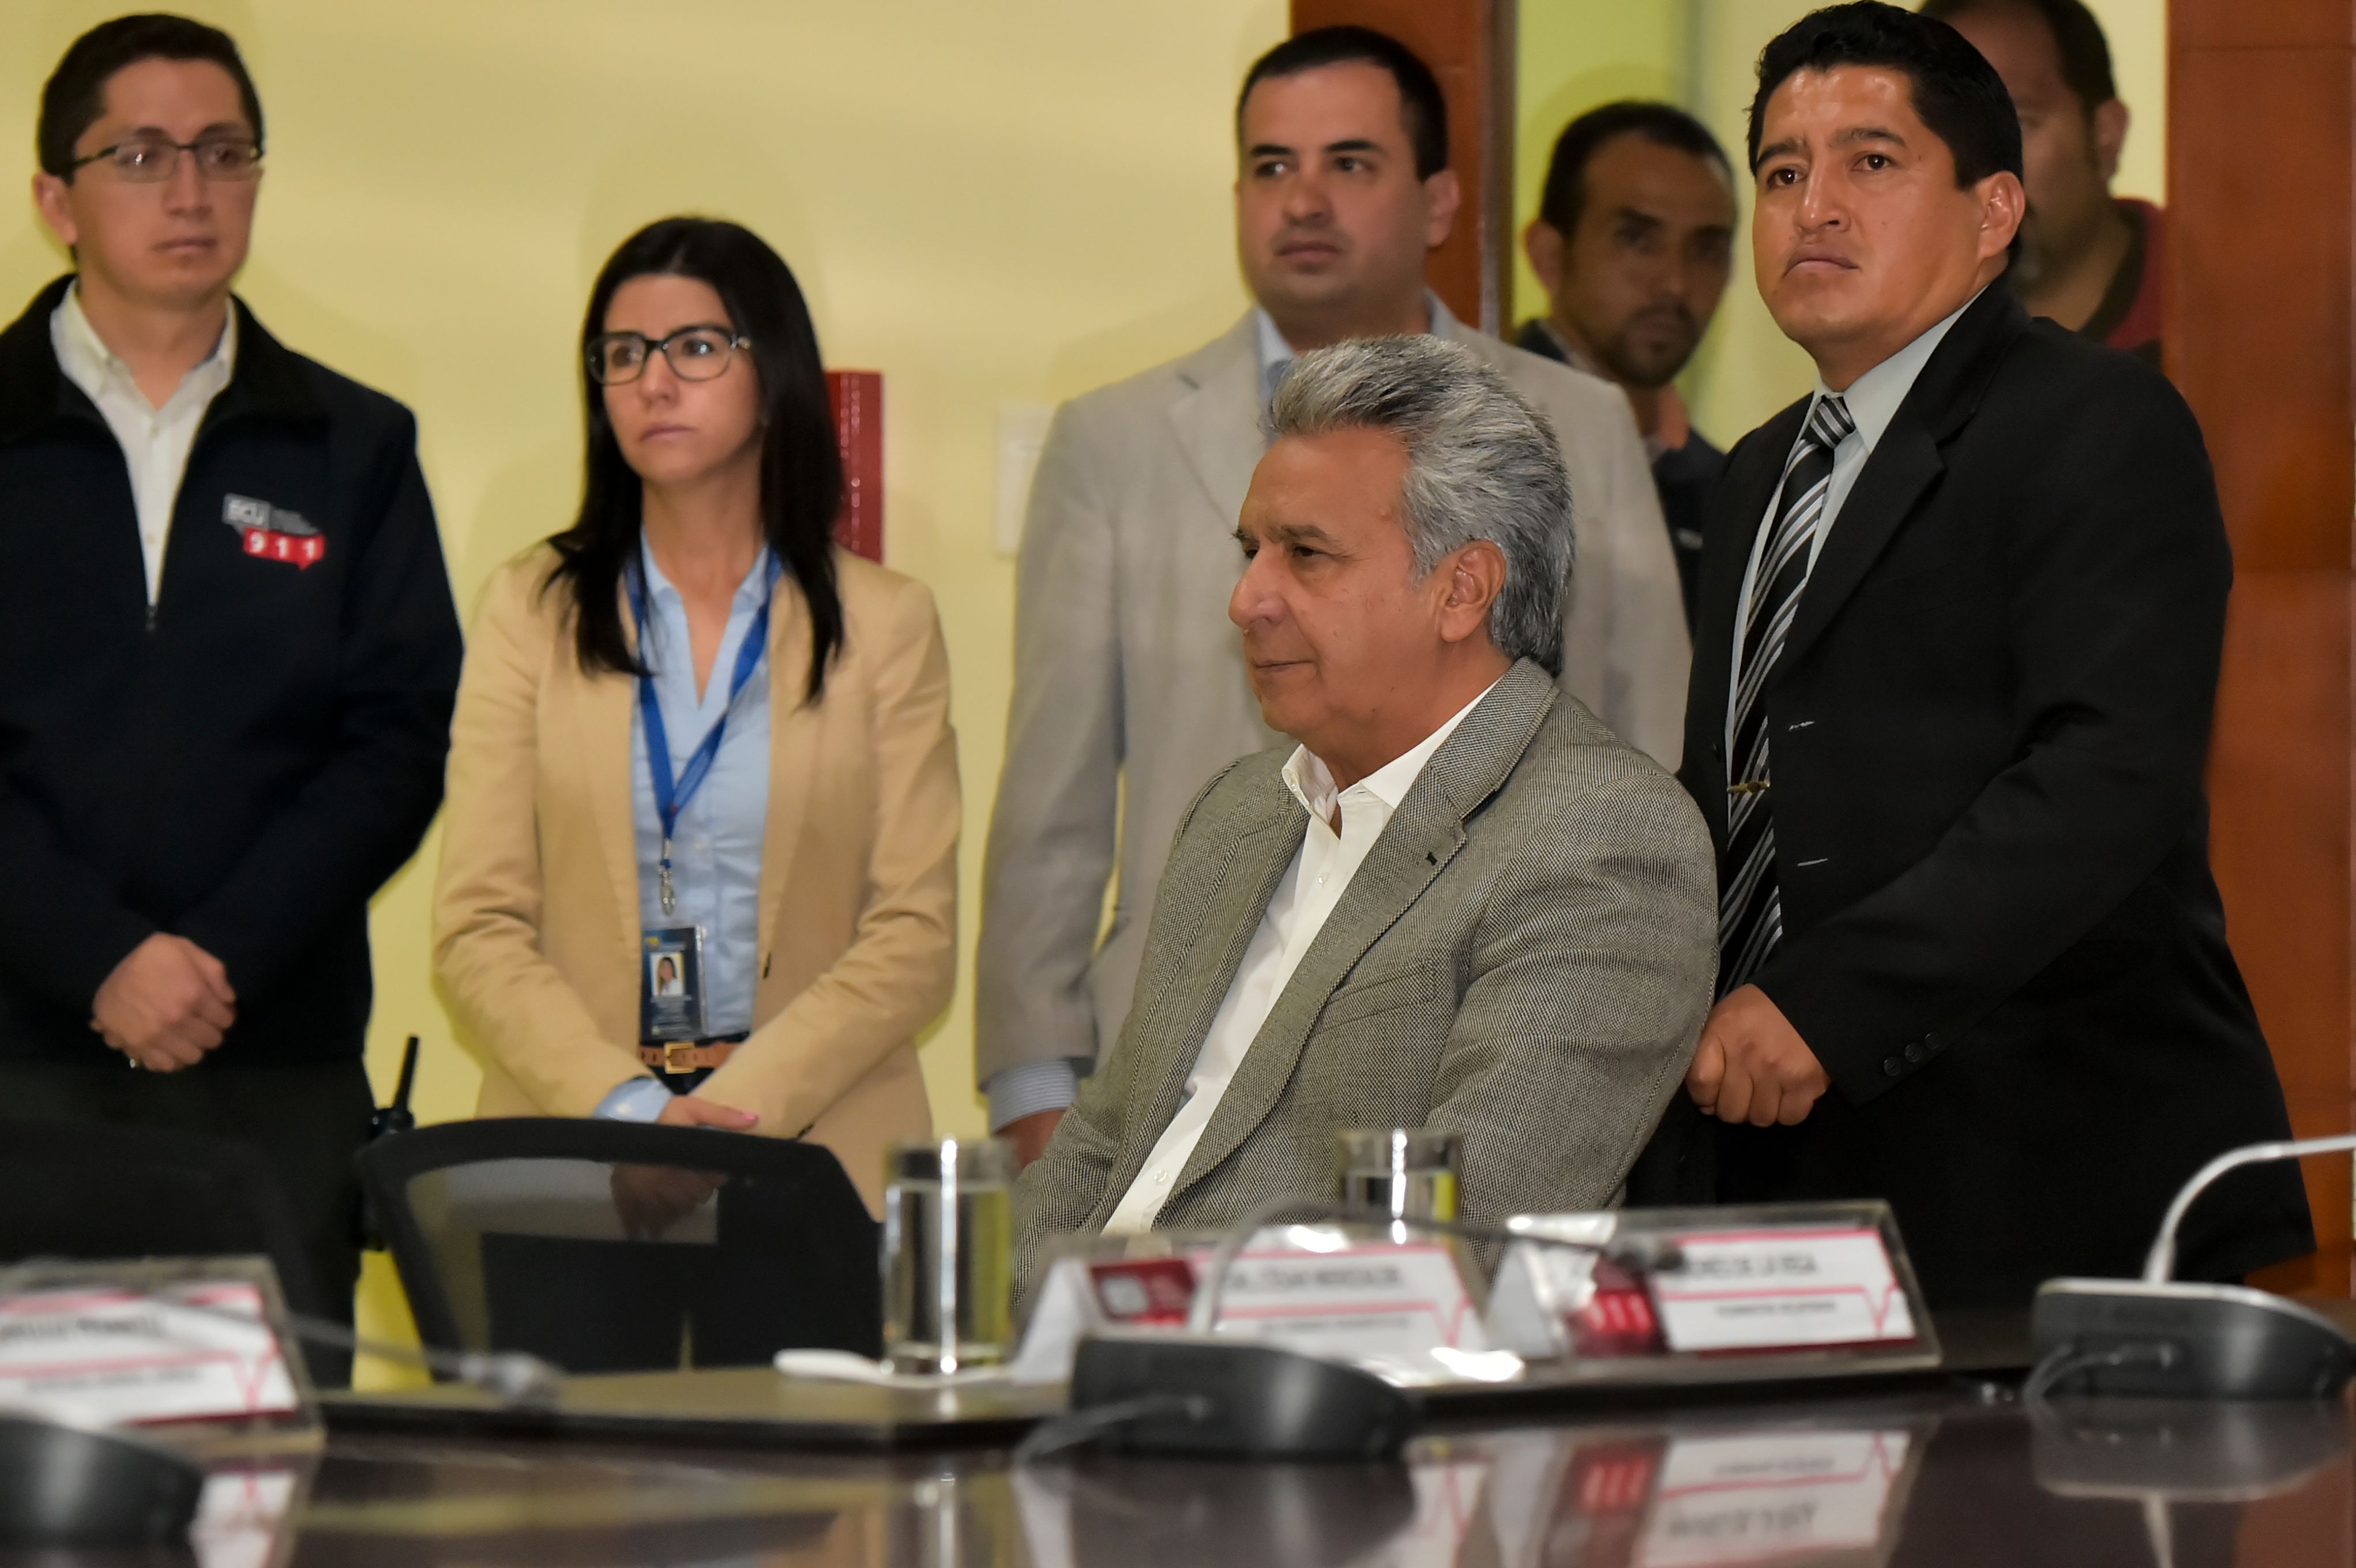 الرئيس الإكوادوري لينين مورينو